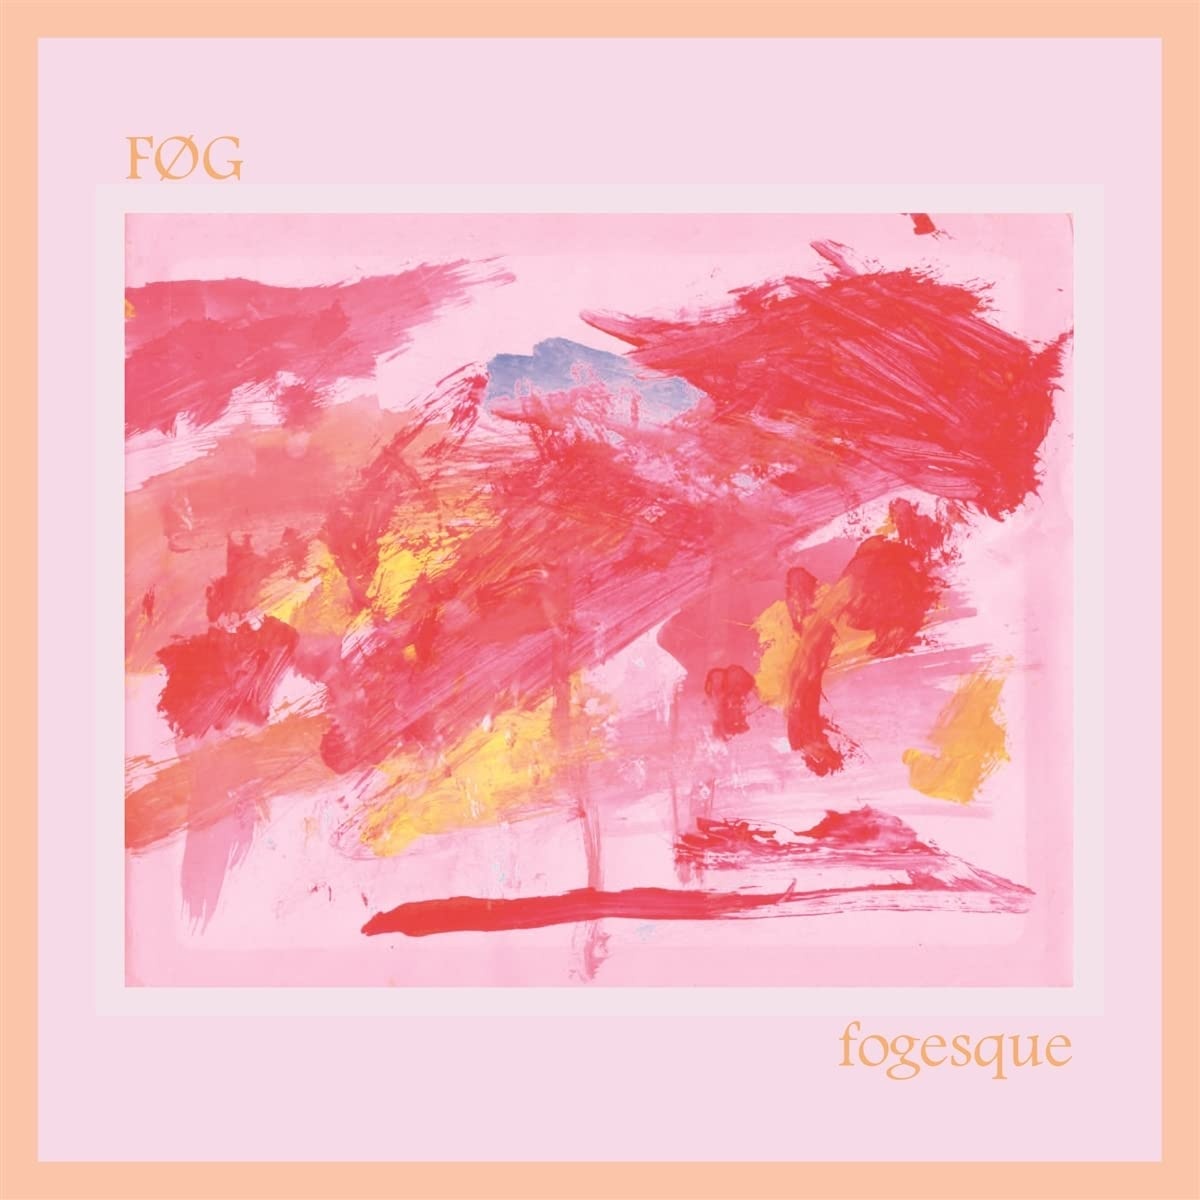 FOG - Fogesque vinyl cover